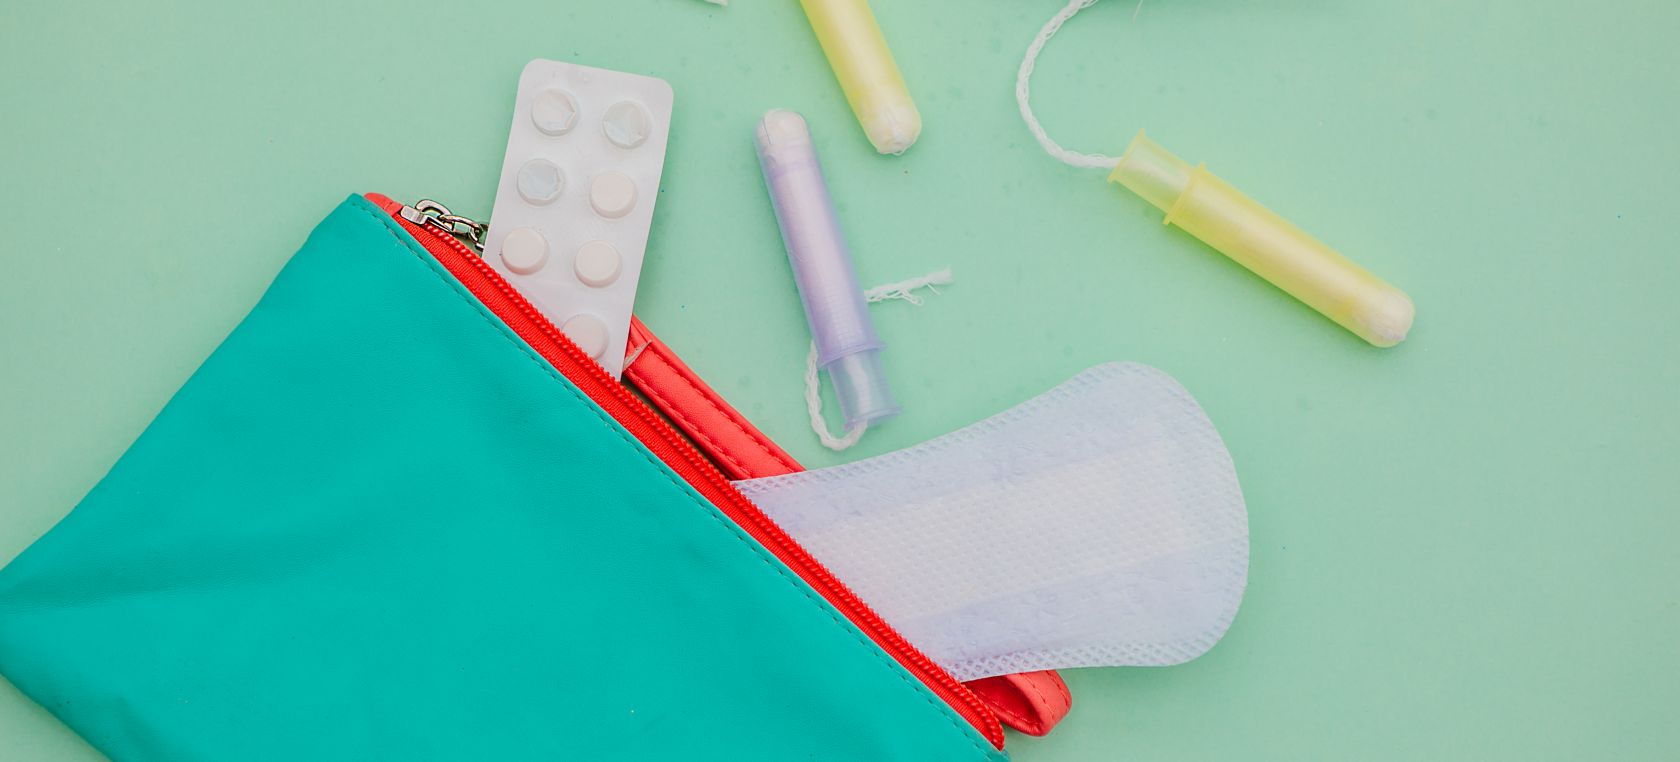 Es oficial: Escocia se convierte en el primera país del mundo en dar gratis productos de higiéne menstrual